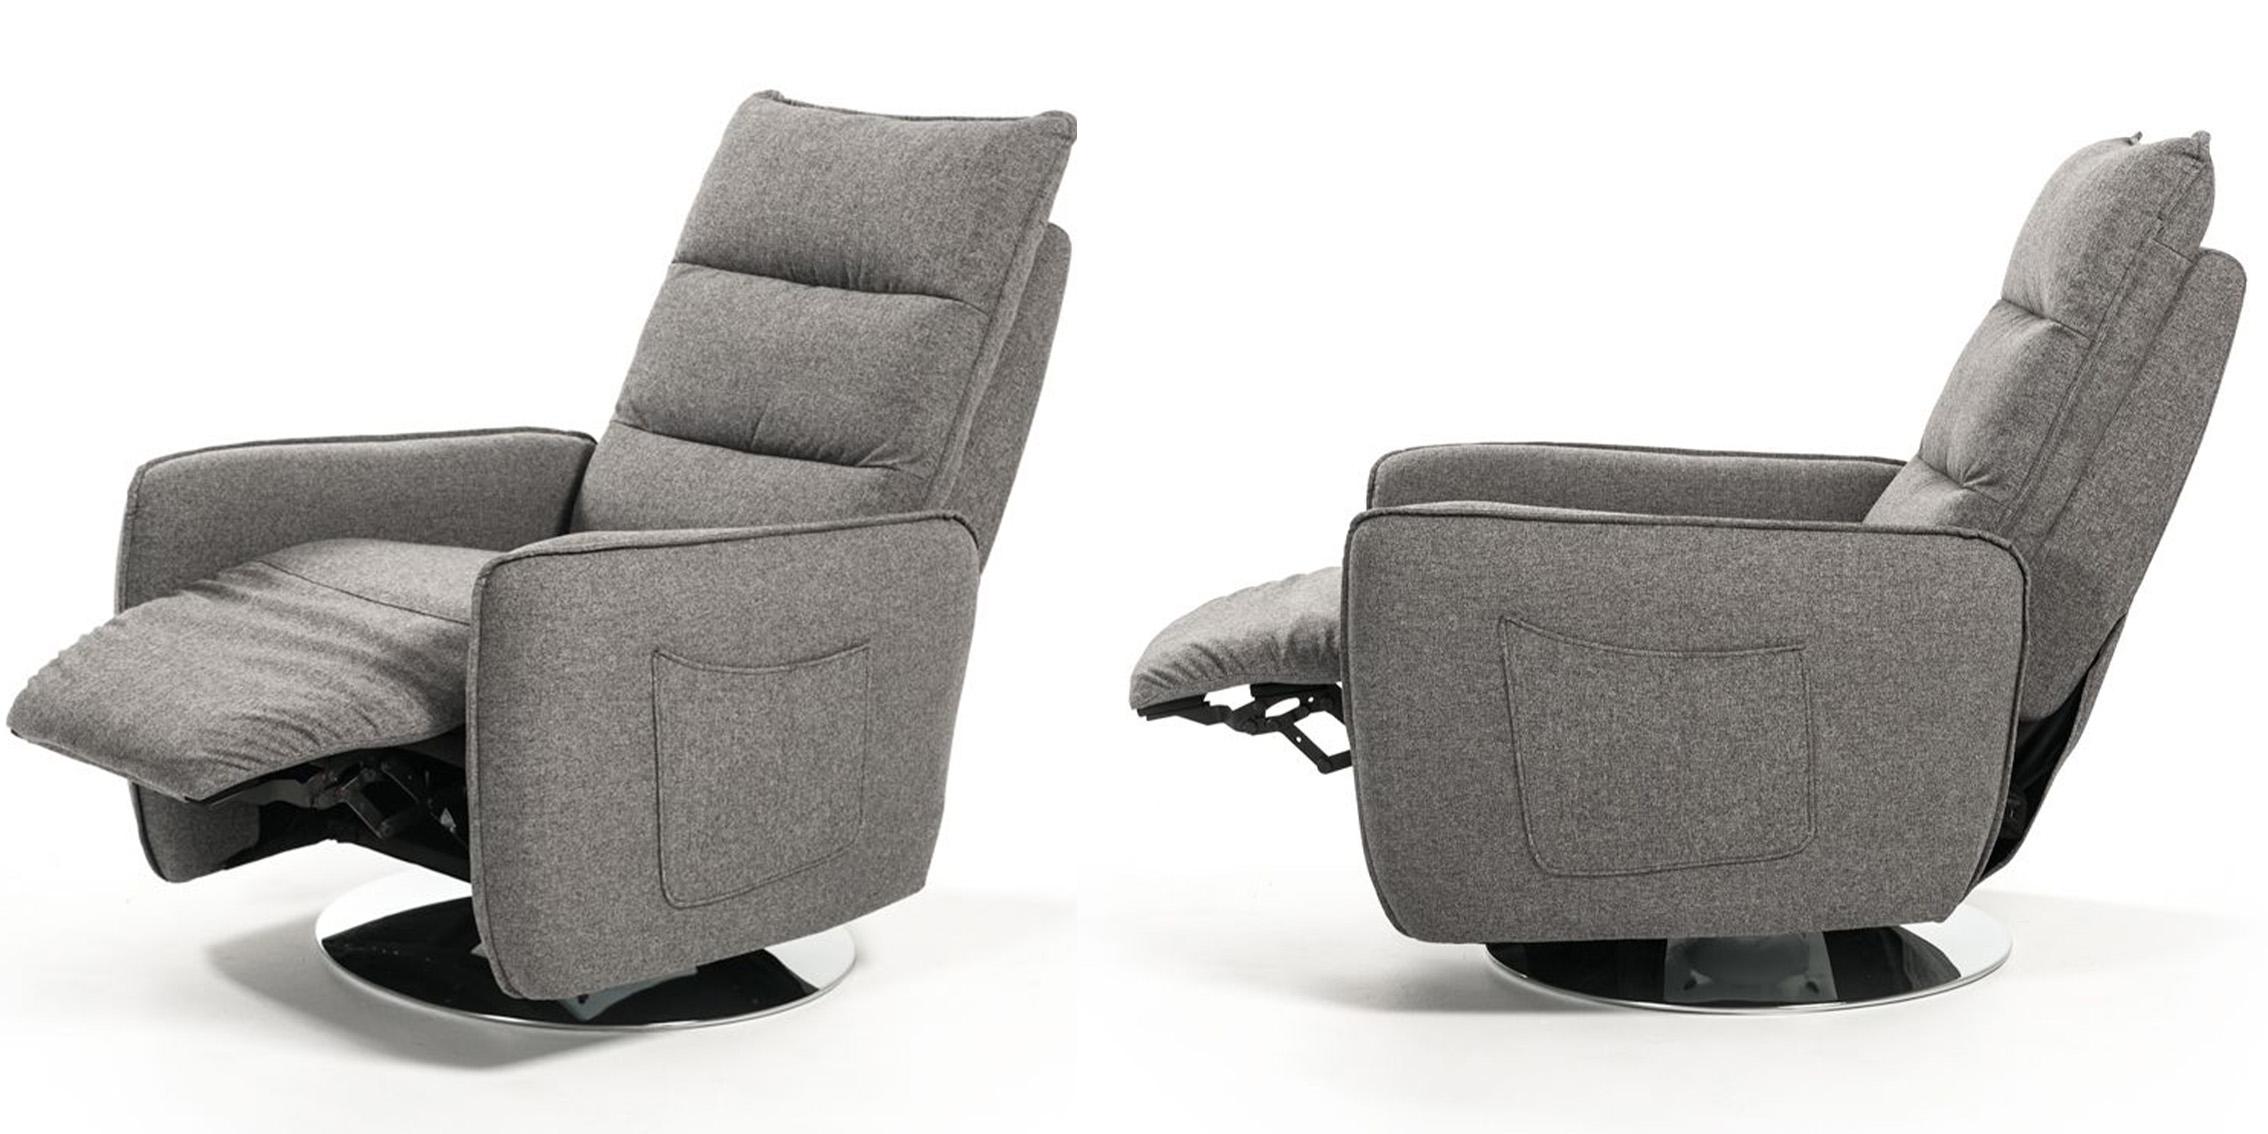 

    
VIG Furniture VGMB-R033-GRY Recliner Chair Gray VGMB-R033-GRY
